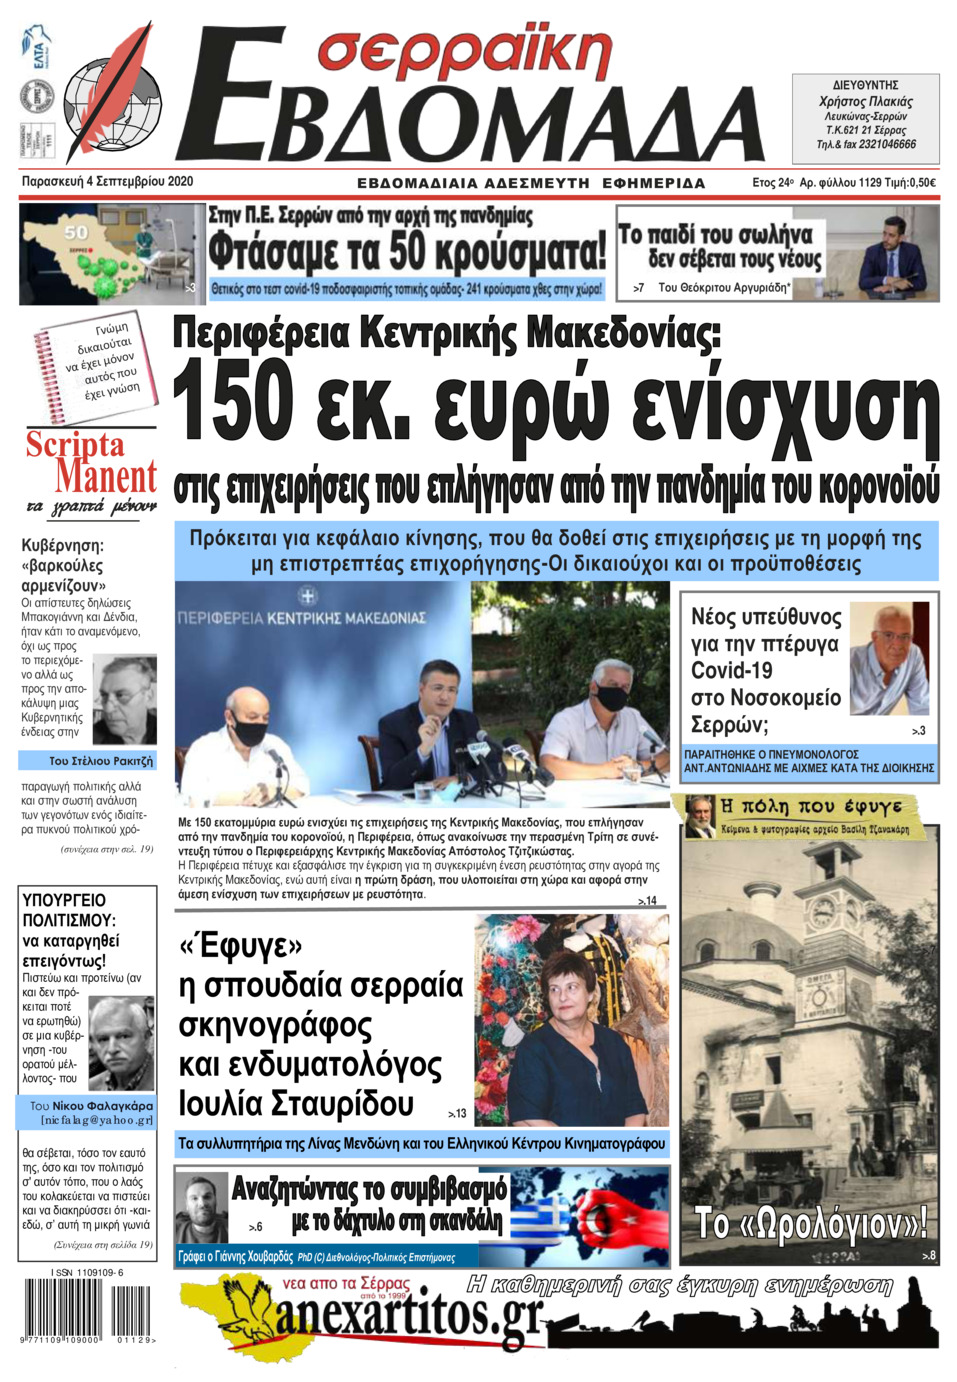 Πρωτοσέλιδο εφημερίδας Σερραϊκή Εβδομάδα